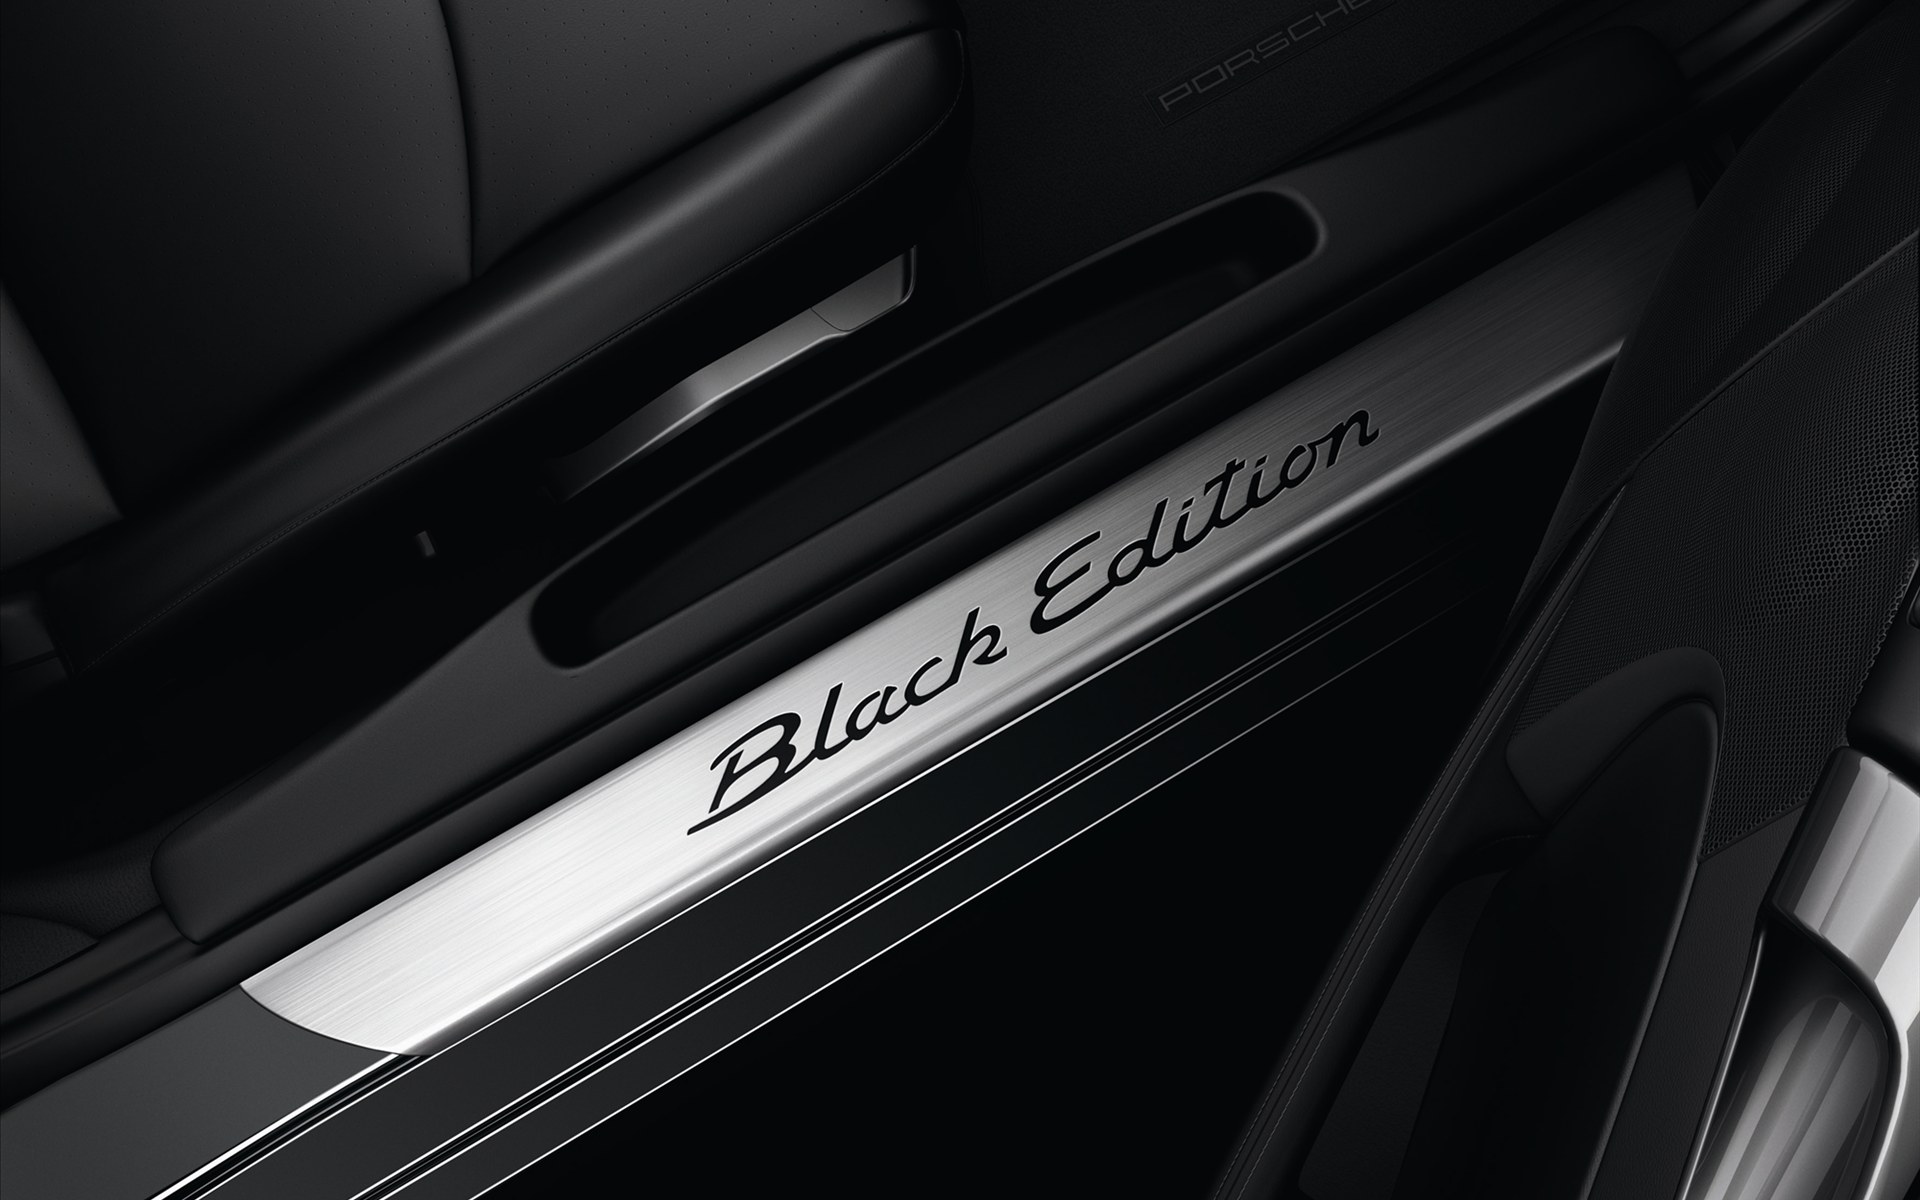 Porsche Cayman S Black Edition 2012 (保时捷Cayman S黑色版)- 汽车壁纸